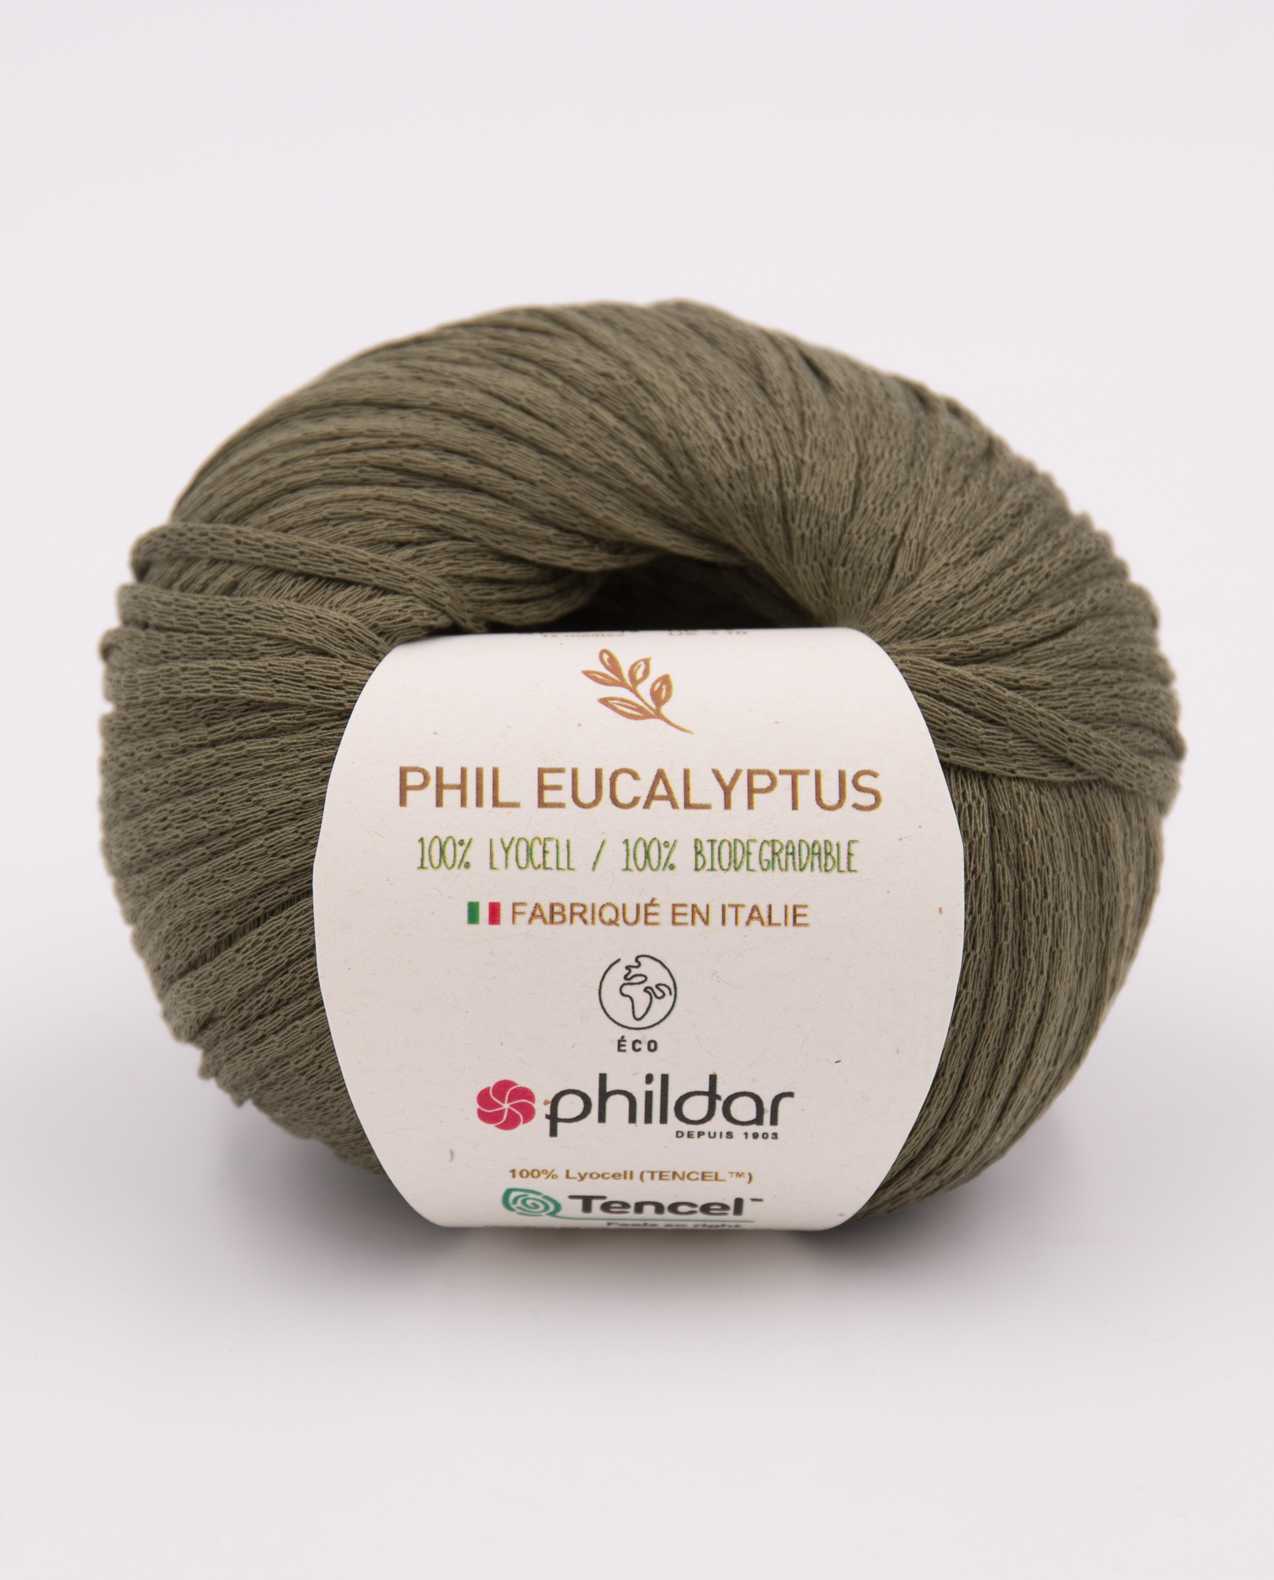 Phildar Phil Eucalyptus kleur army